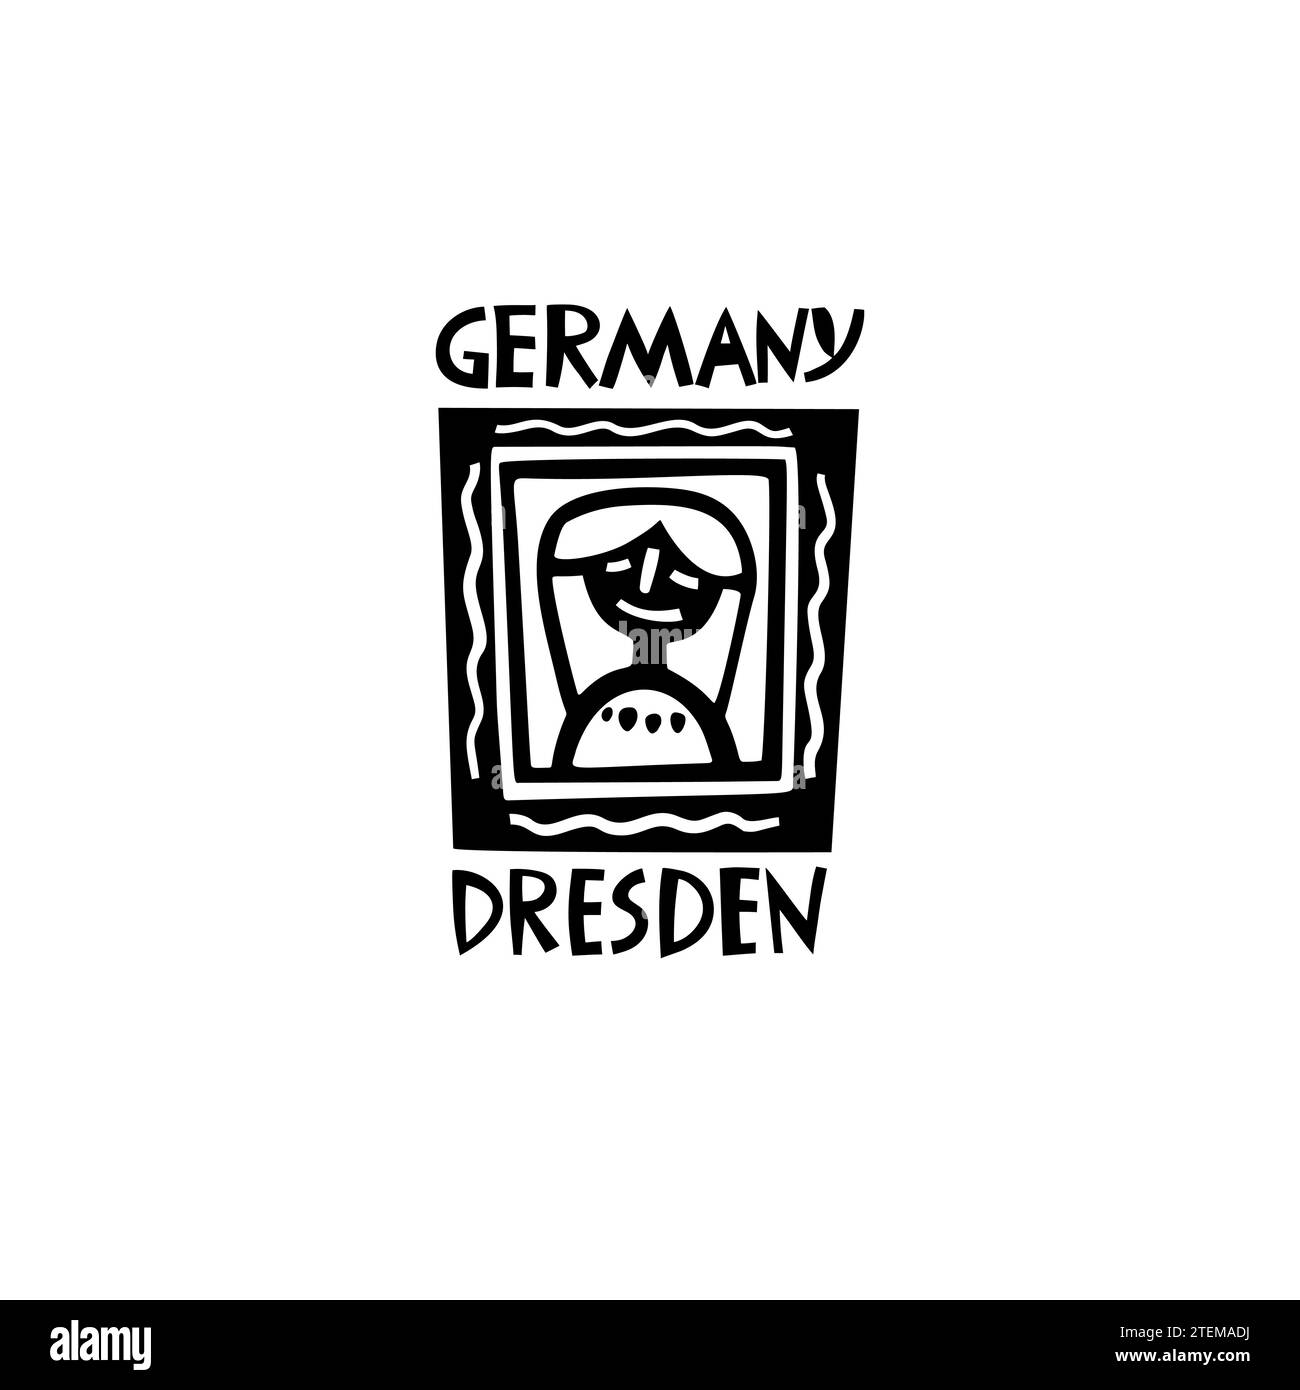 Vector Hand Drawn Germany Label. Travel Europe Illustration. Illustration du lettrage écrit à la main. Logo symbole Allemagne Illustration de Vecteur